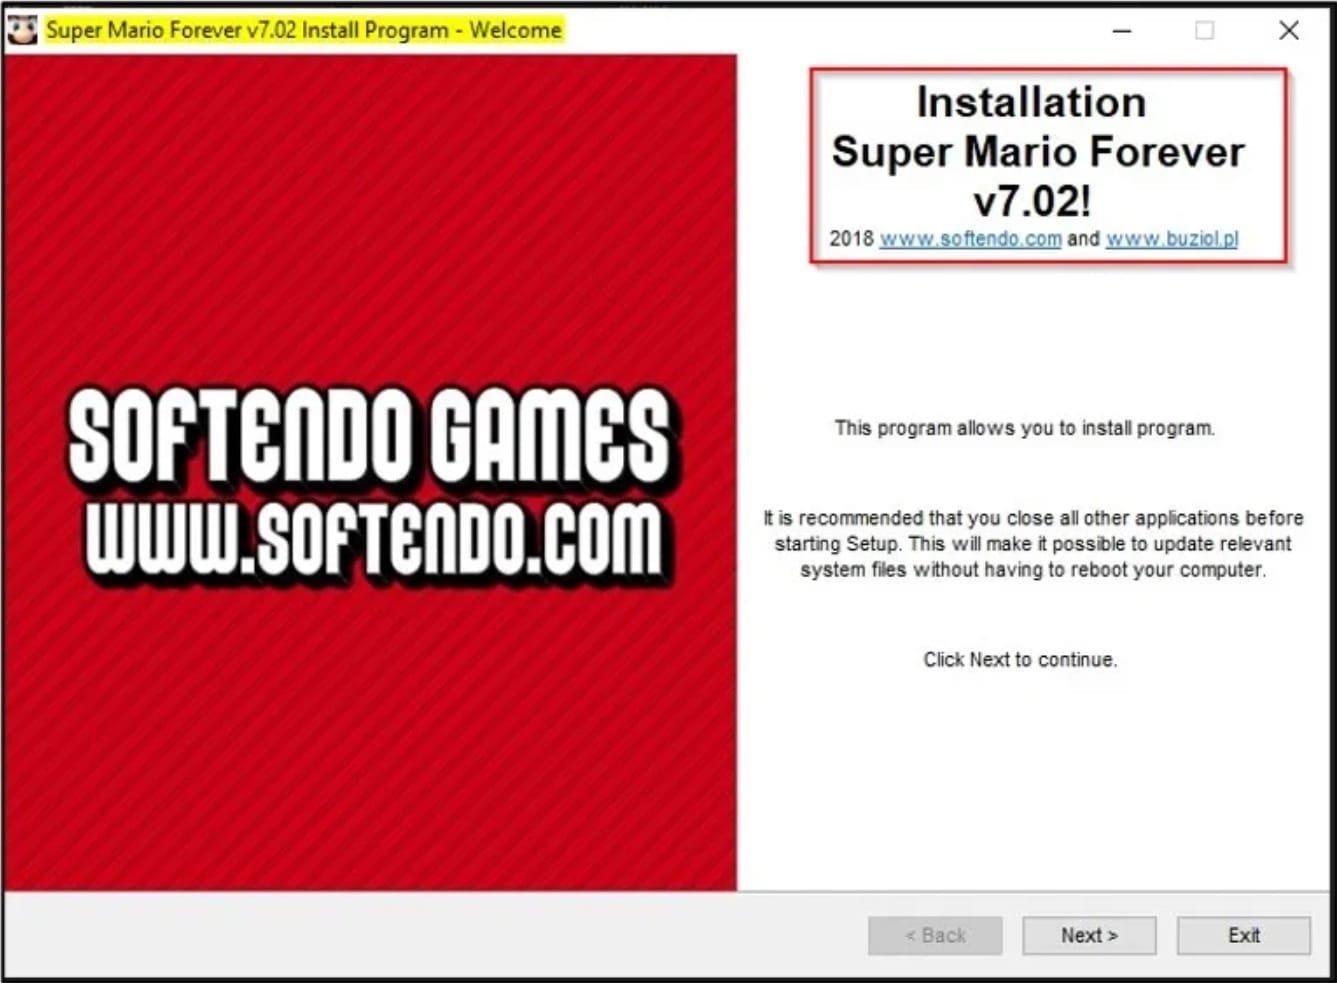 Malware in Super Mario